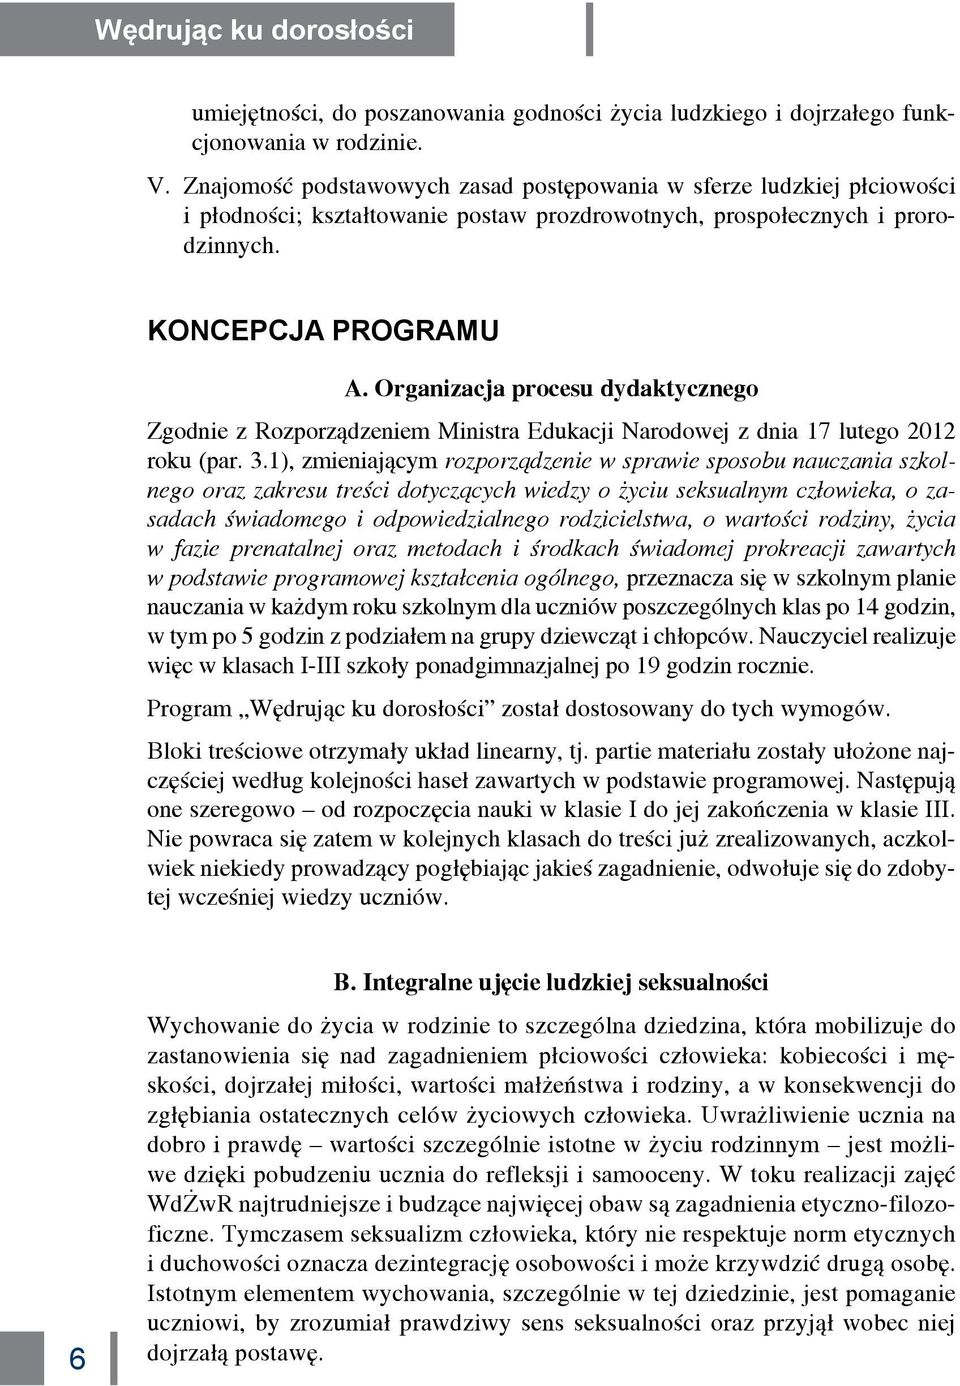 Organizacja procesu dydaktycznego Zgodnie z Rozporządzeniem Ministra Edukacji Narodowej z dnia 17 lutego 2012 roku (par. 3.